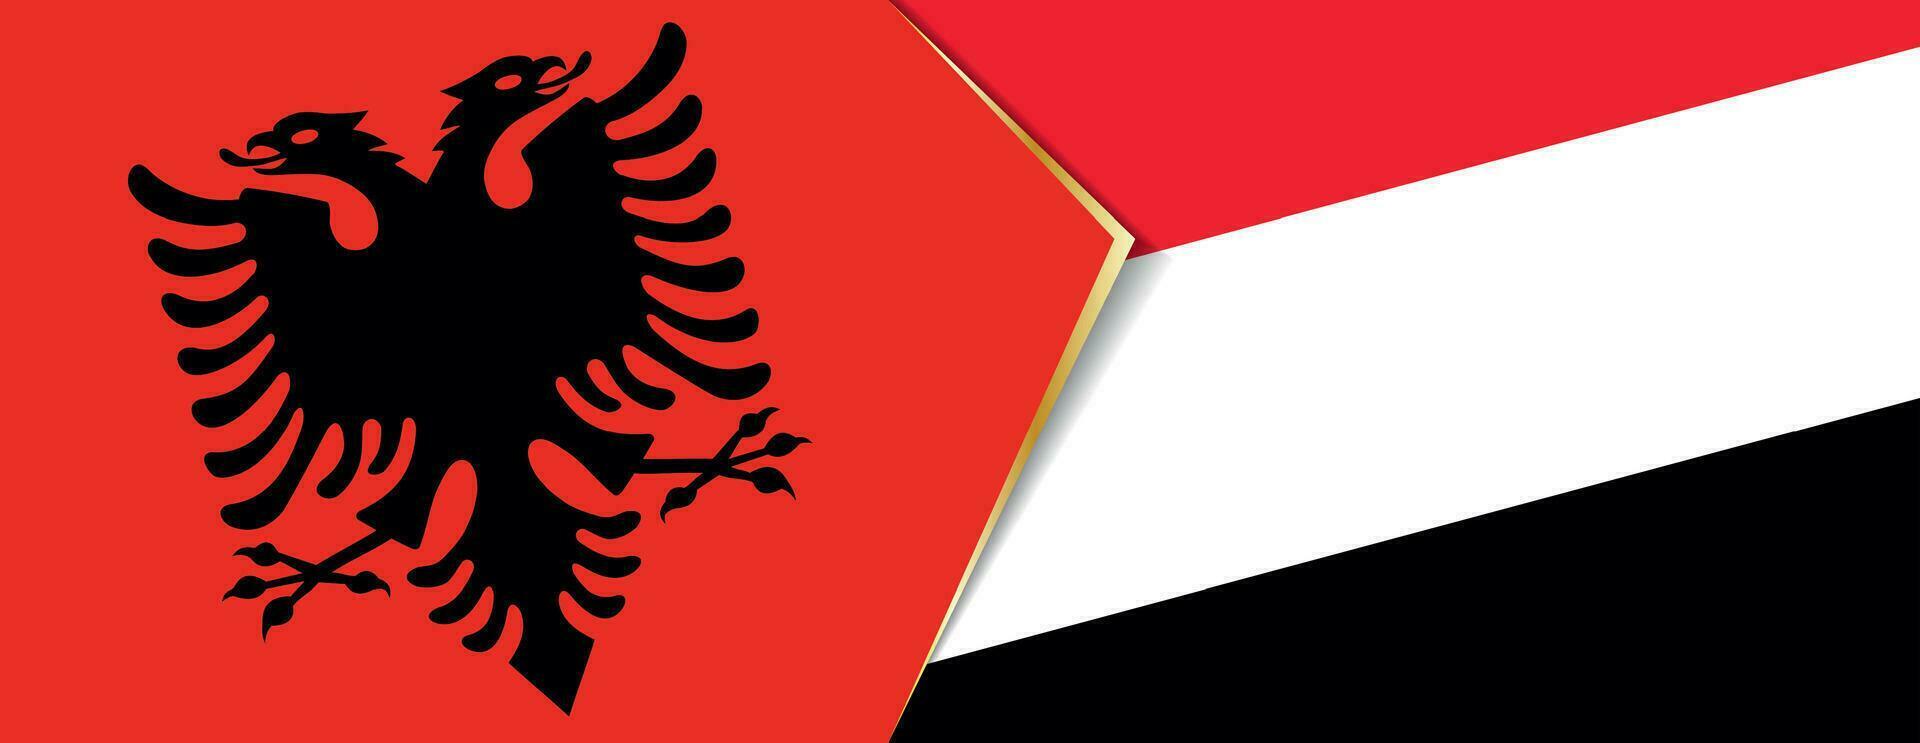 Albania e yemen bandiere, Due vettore bandiere.